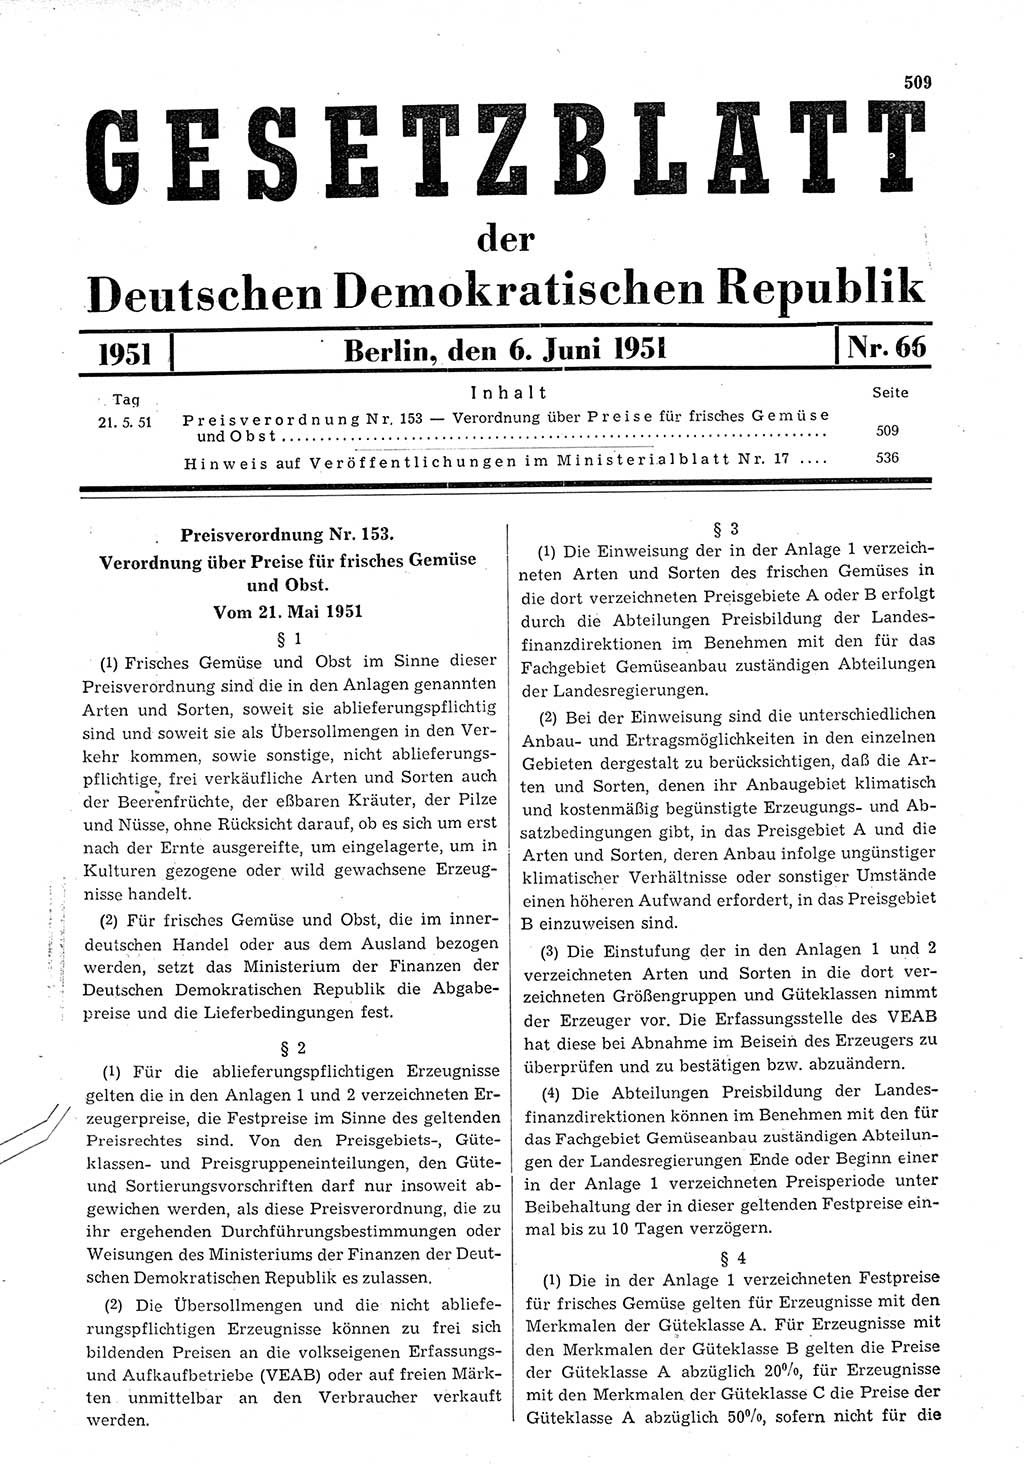 Gesetzblatt (GBl.) der Deutschen Demokratischen Republik (DDR) 1951, Seite 509 (GBl. DDR 1951, S. 509)